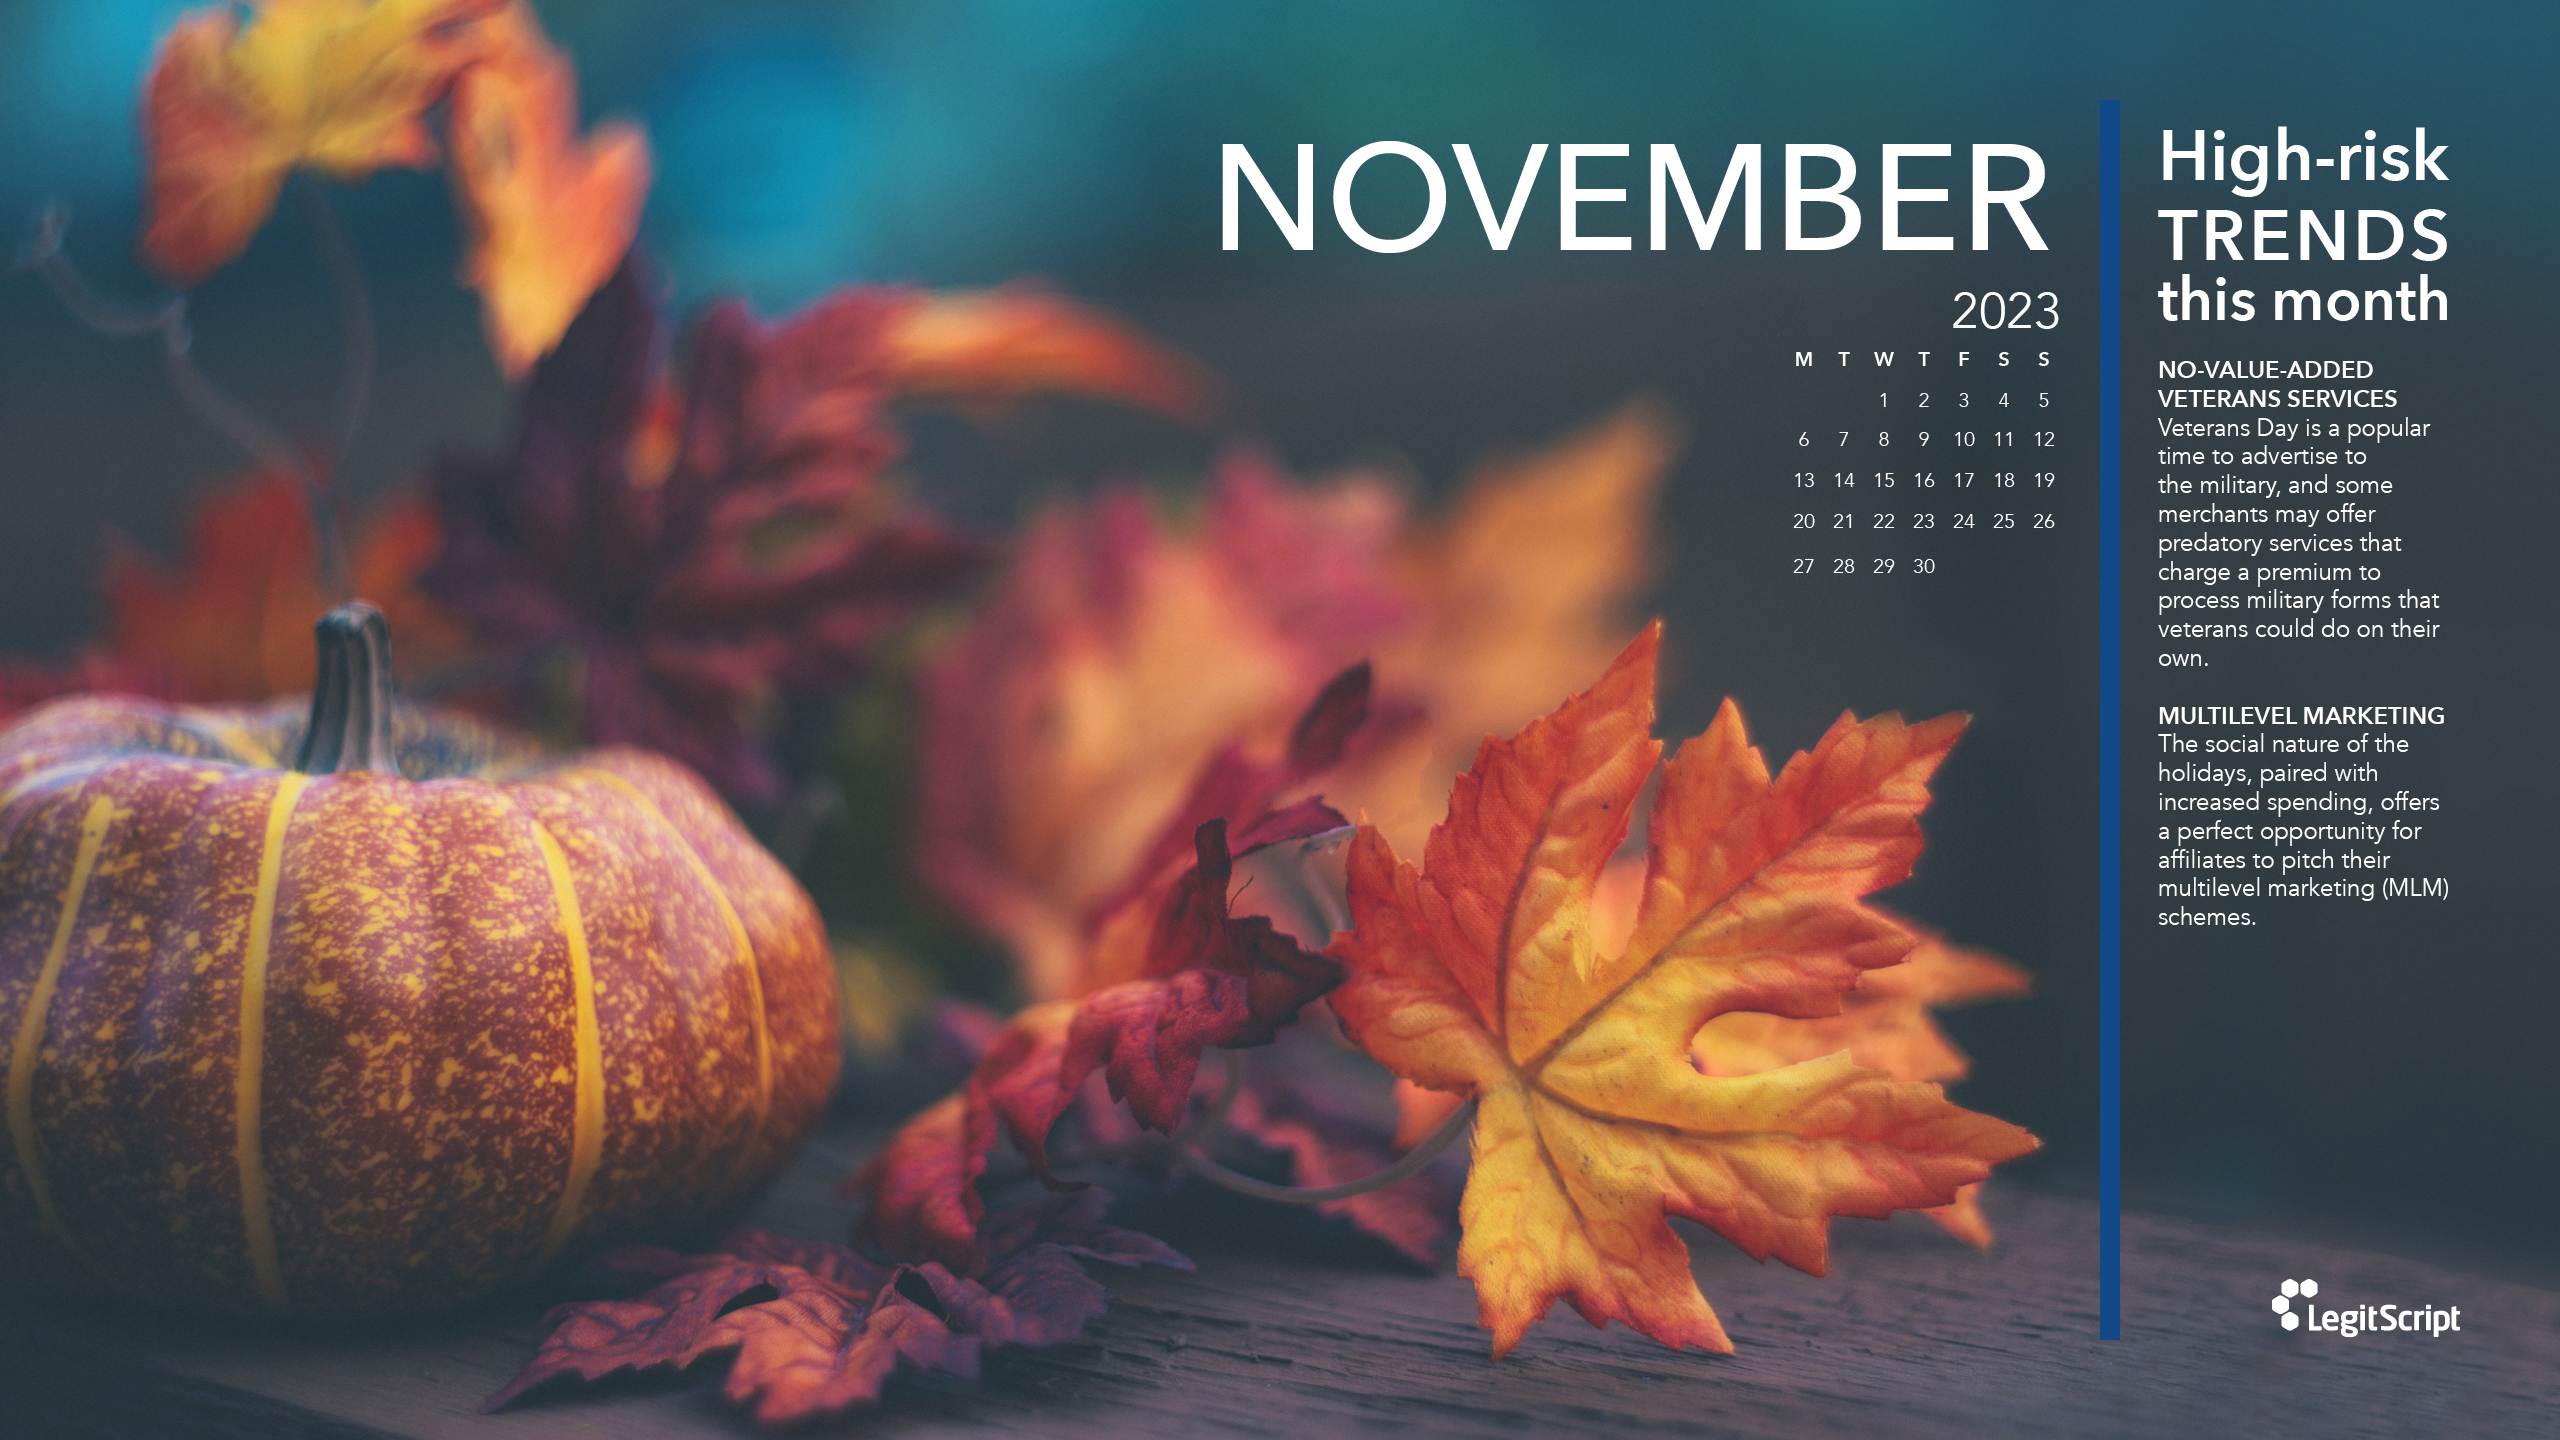 Seasonal High Risk Trends desktop background for November 2.